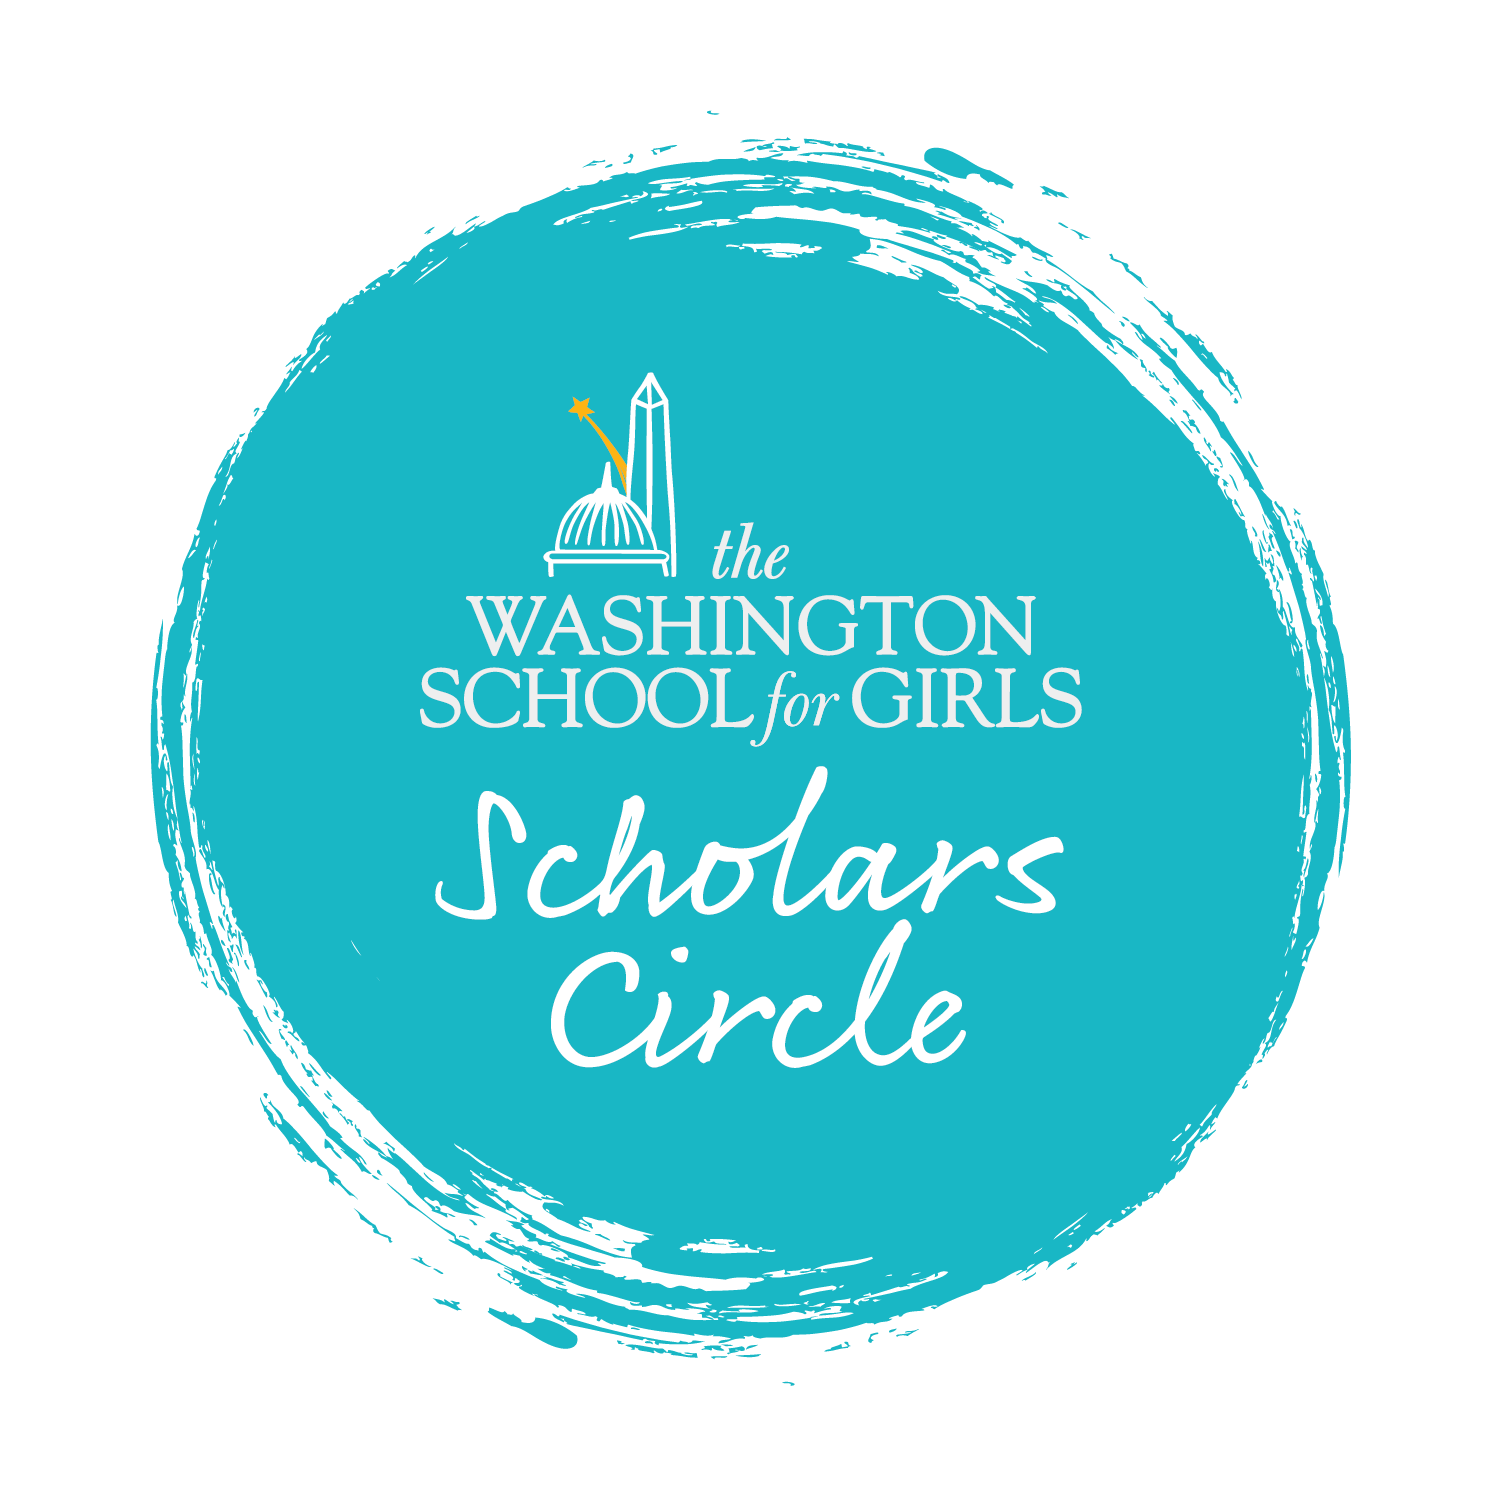 WSG-Scholars Circle-logo-circle